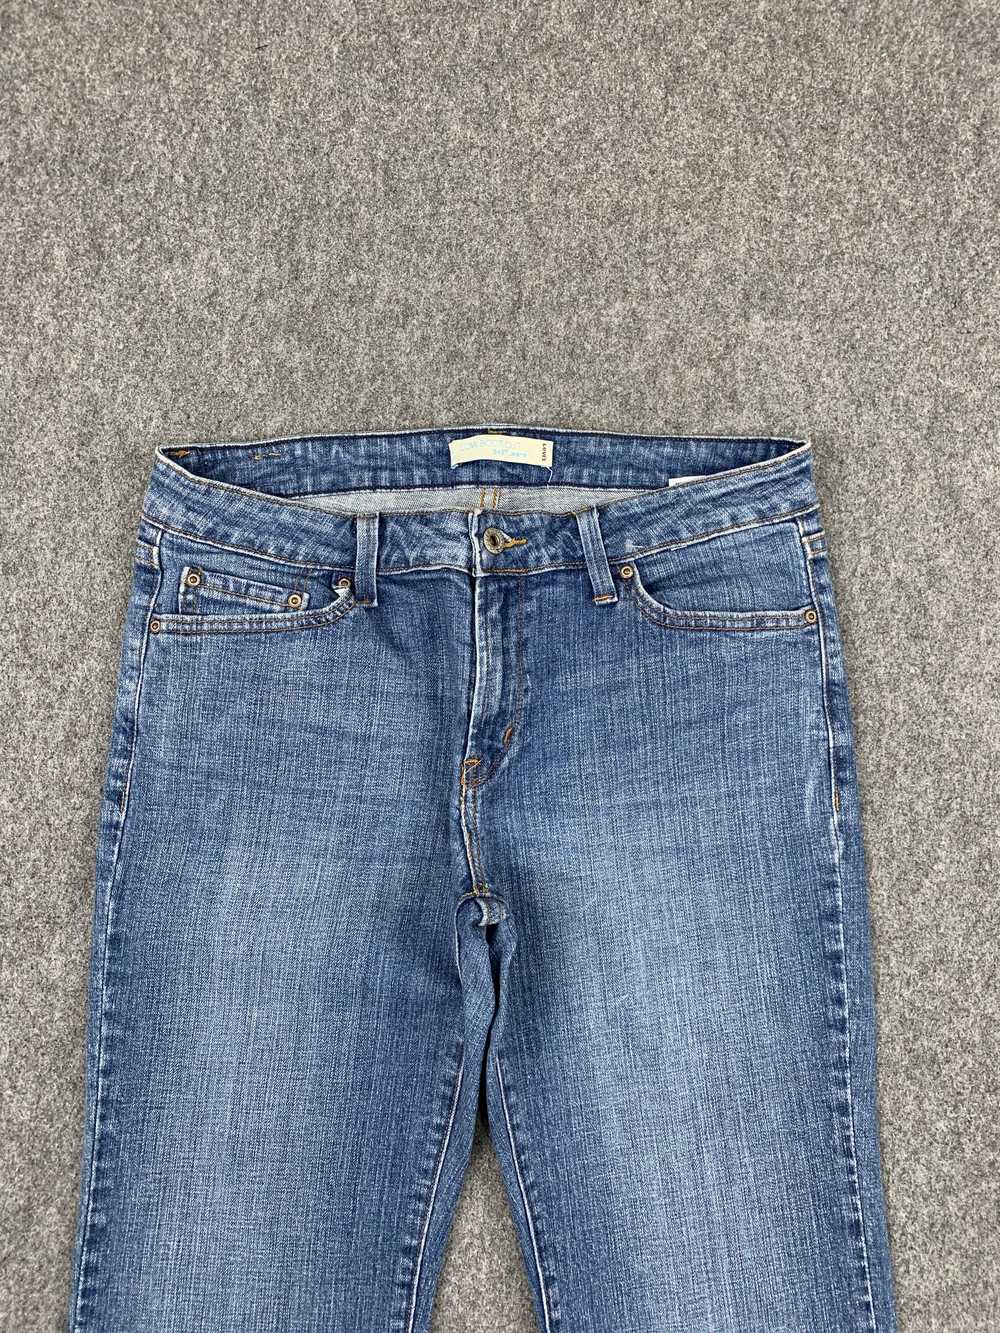 Vintage - Vintage Levis 545 Flared Bootcut Jeans - image 2